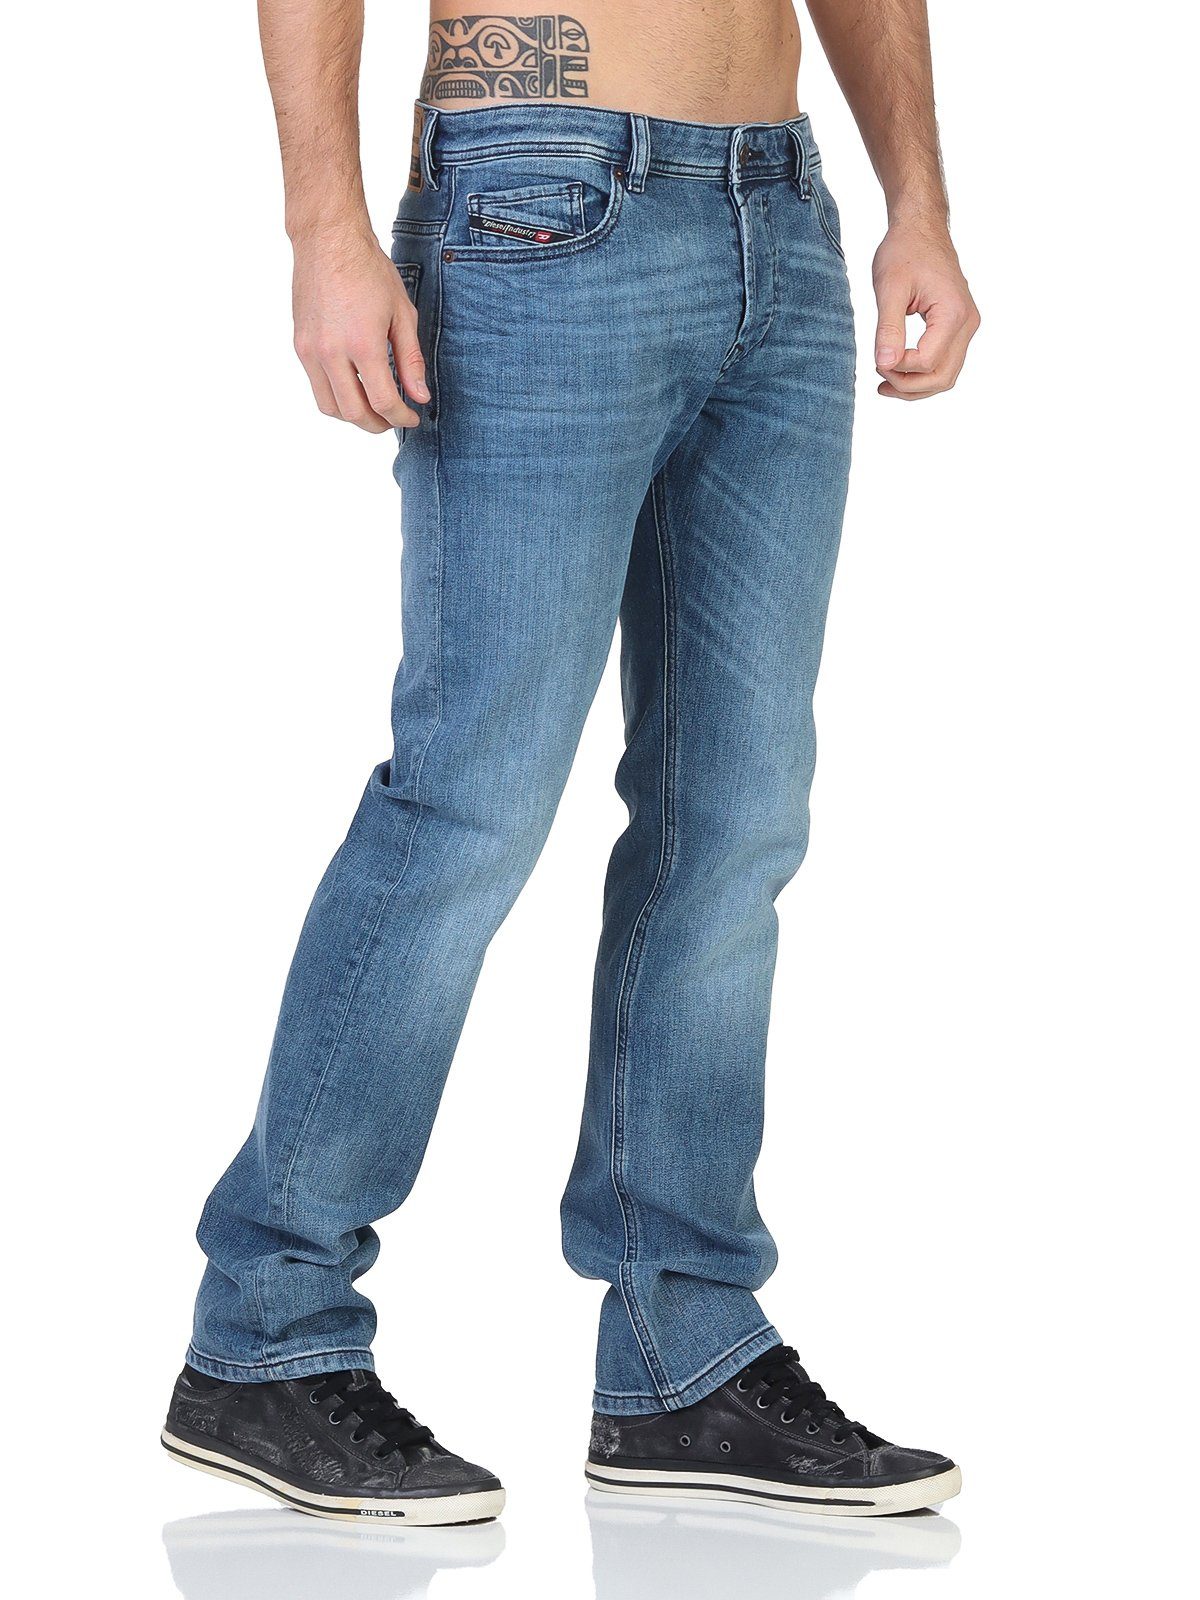 SAFADO-X - Gerader-Fit, Dezent-Used-Look Herren Diesel Diesel RM066 Jeans Slim-fit-Jeans 5-Pocket-Style,